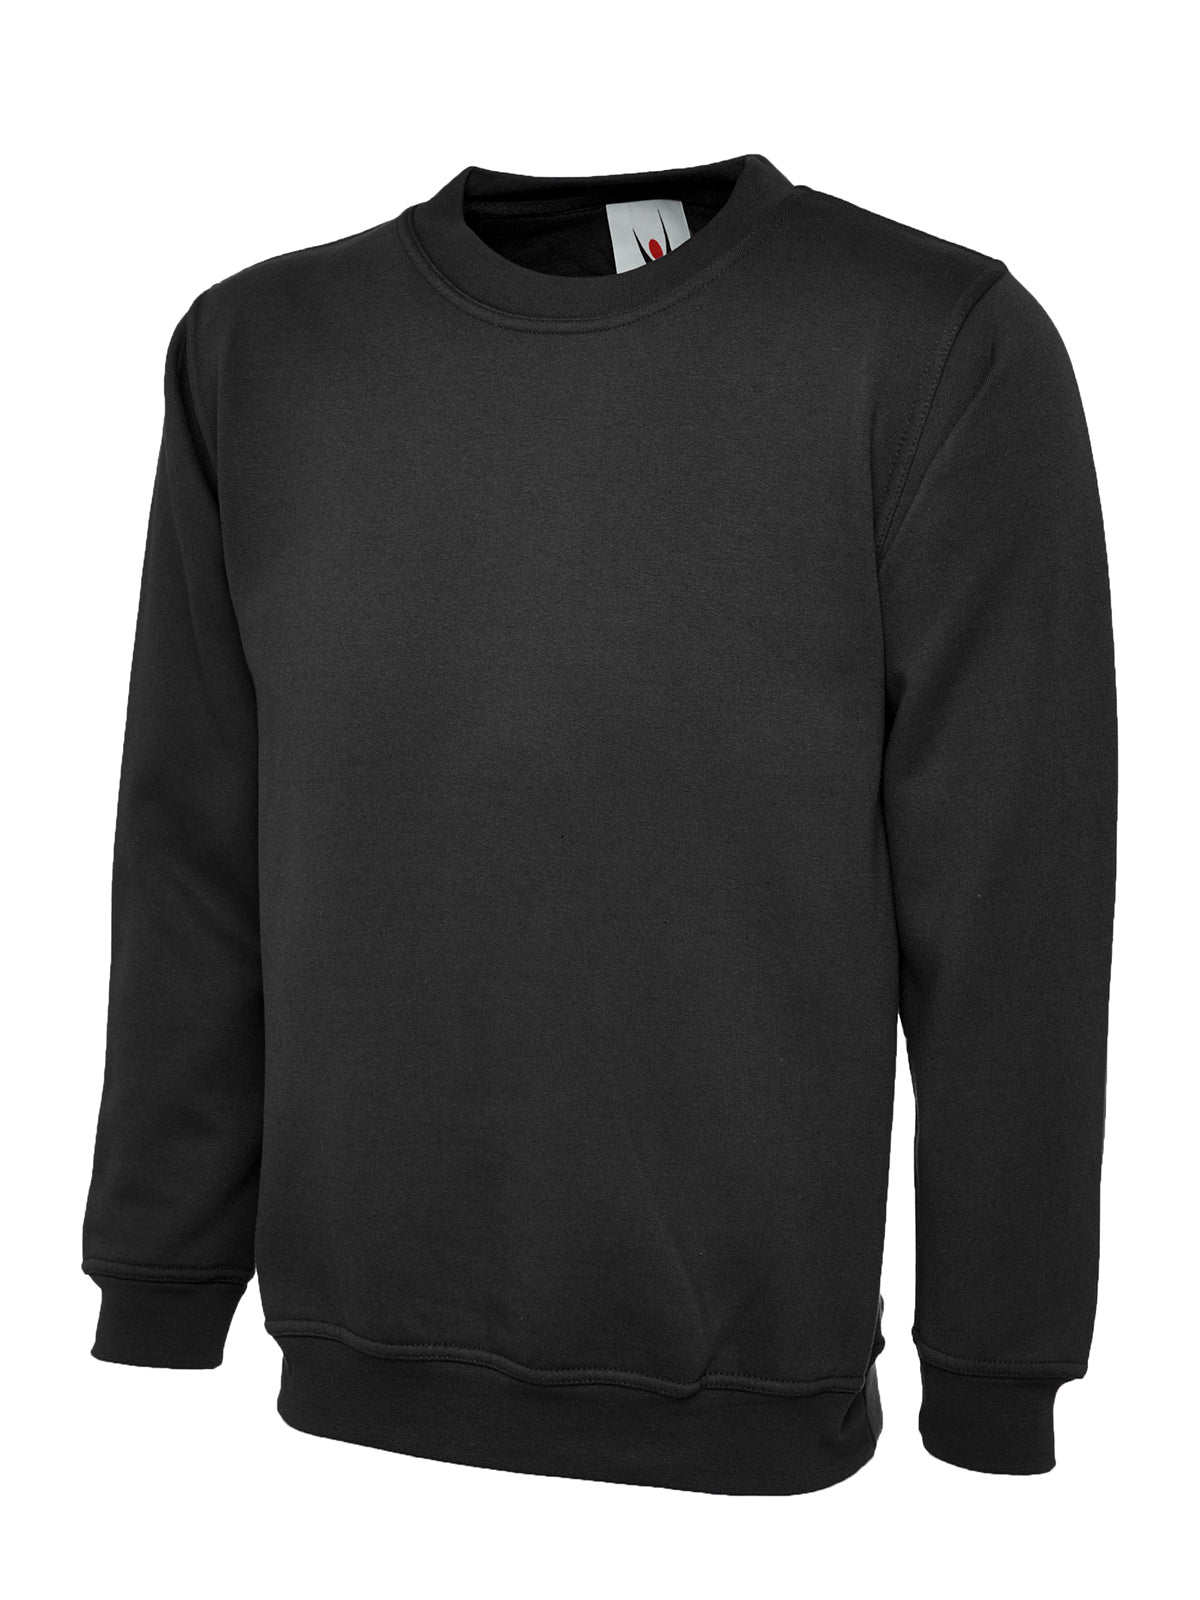 Uneek Ladies Deluxe Crew Neck Sweatshirt UC511 - Black